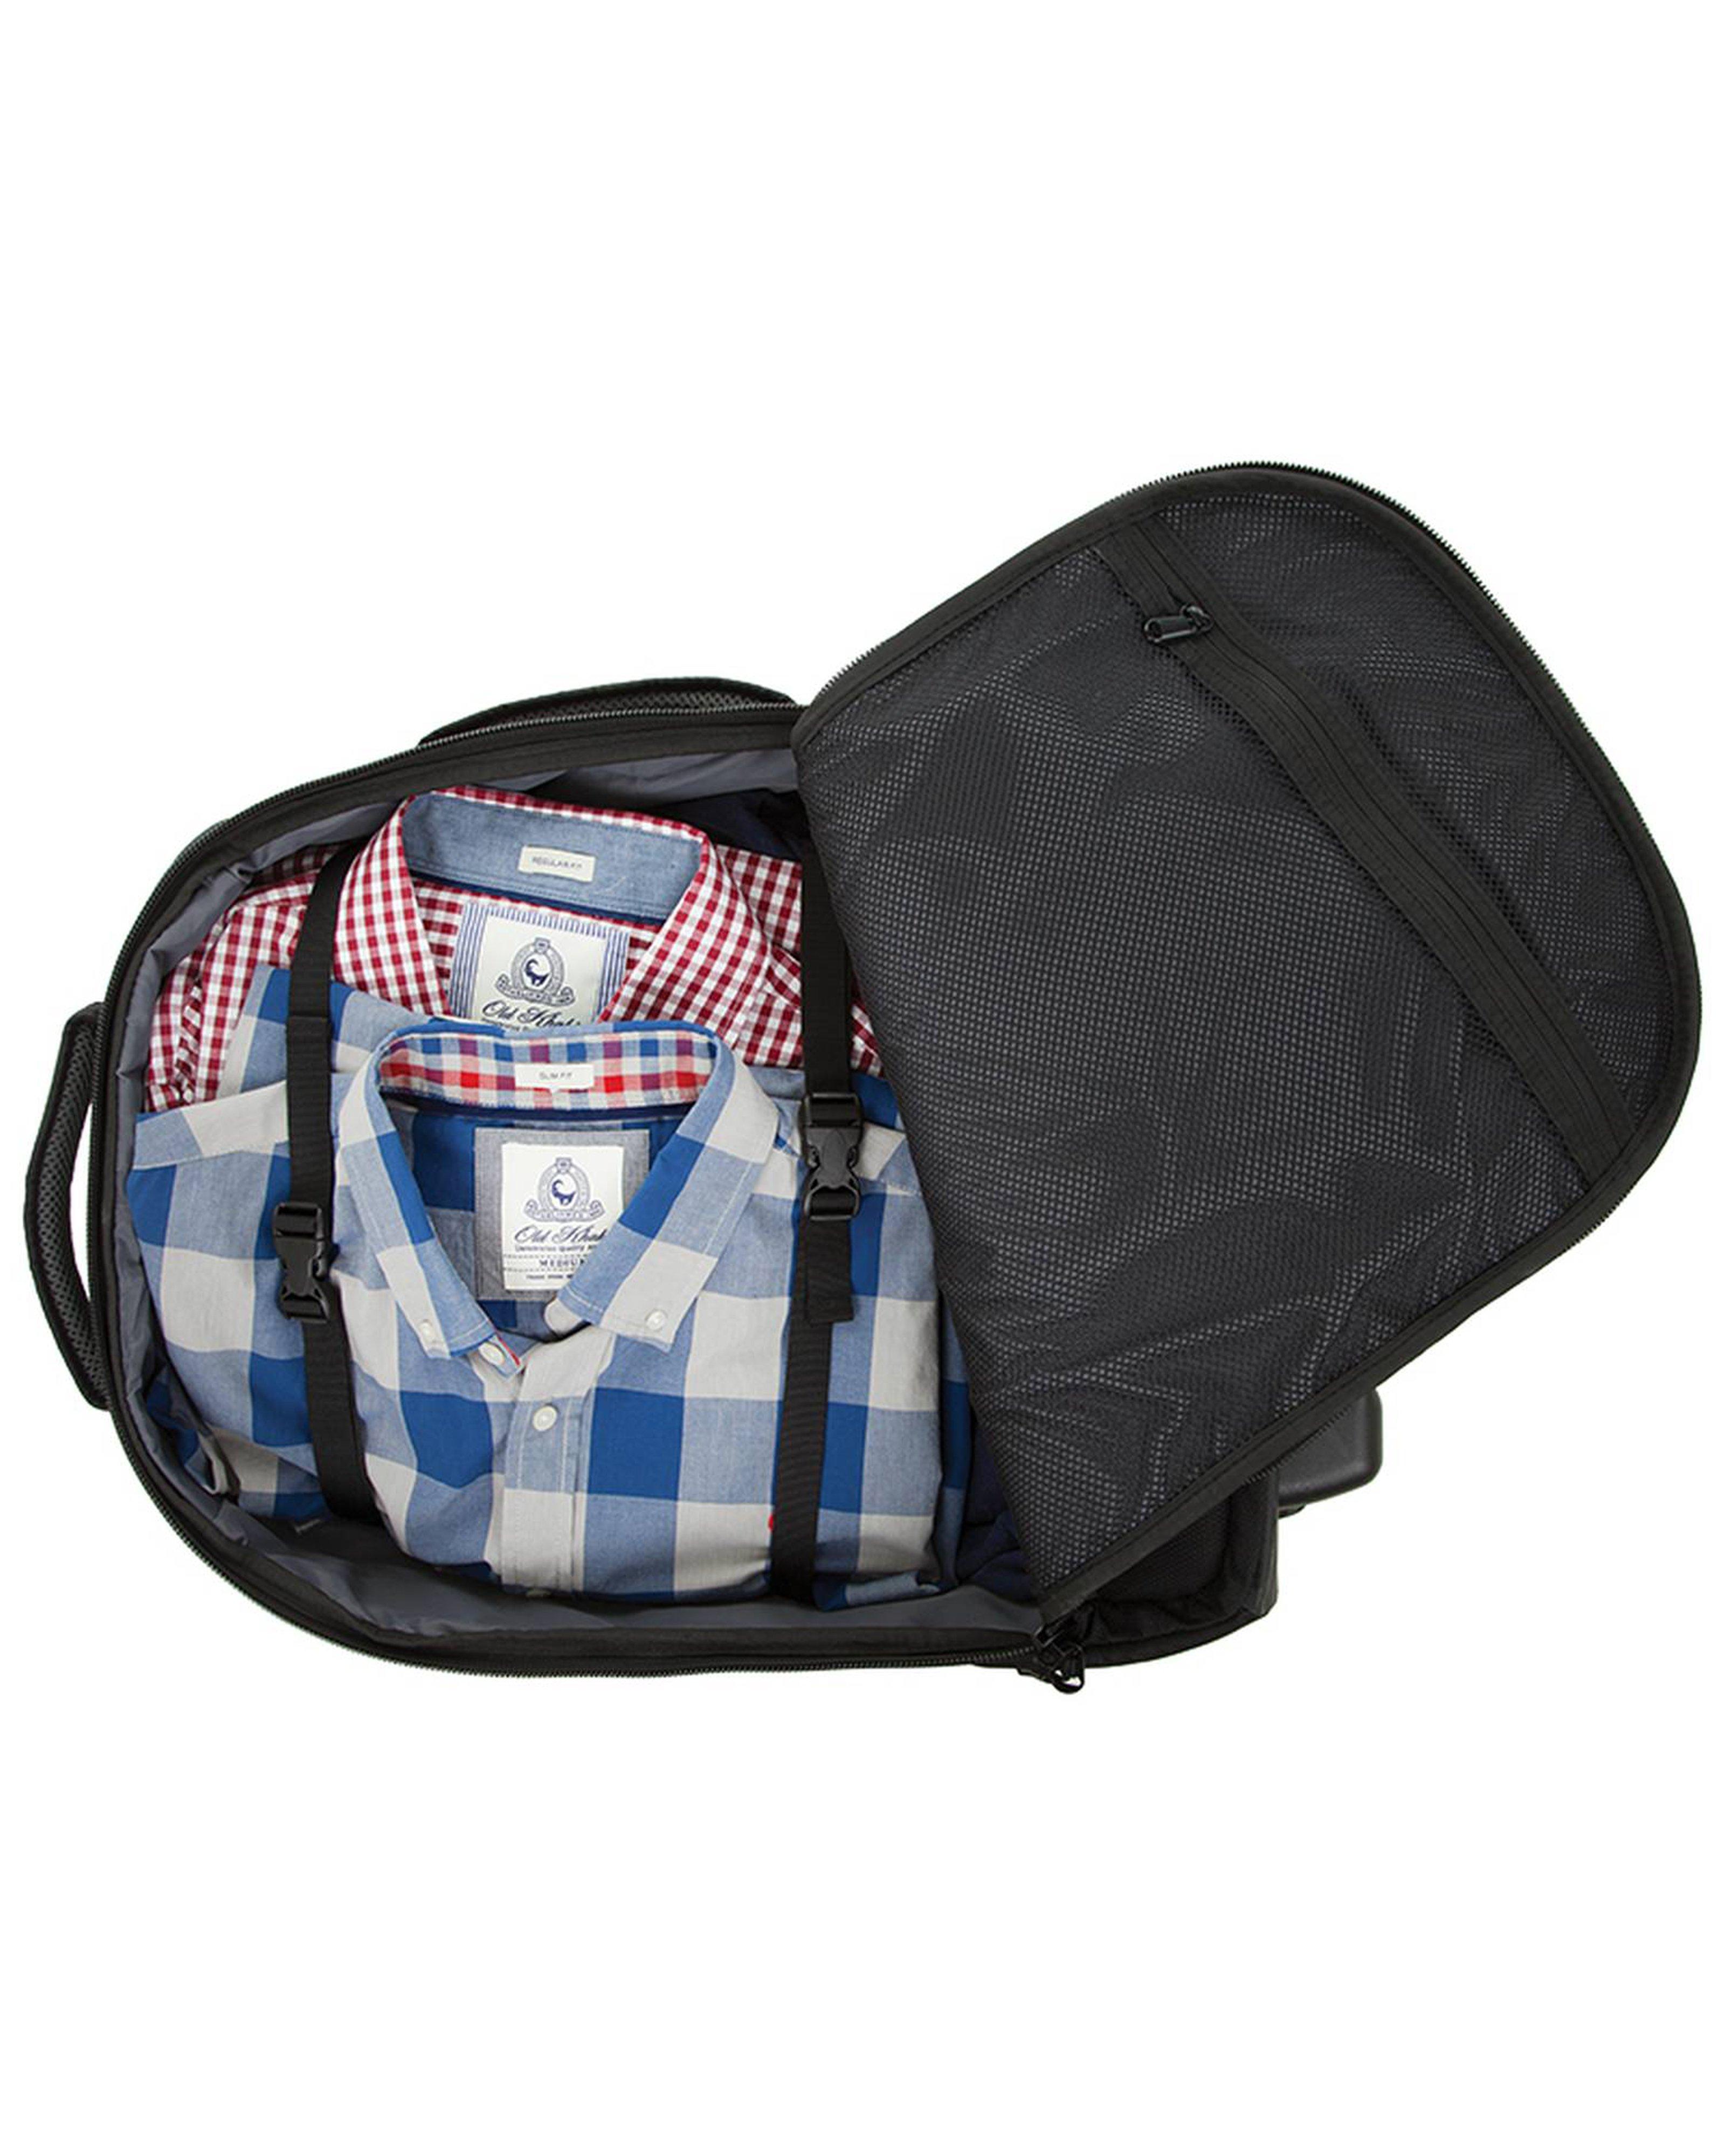 K-Way Travel Buddy Luggage Bag -  Black/Grey